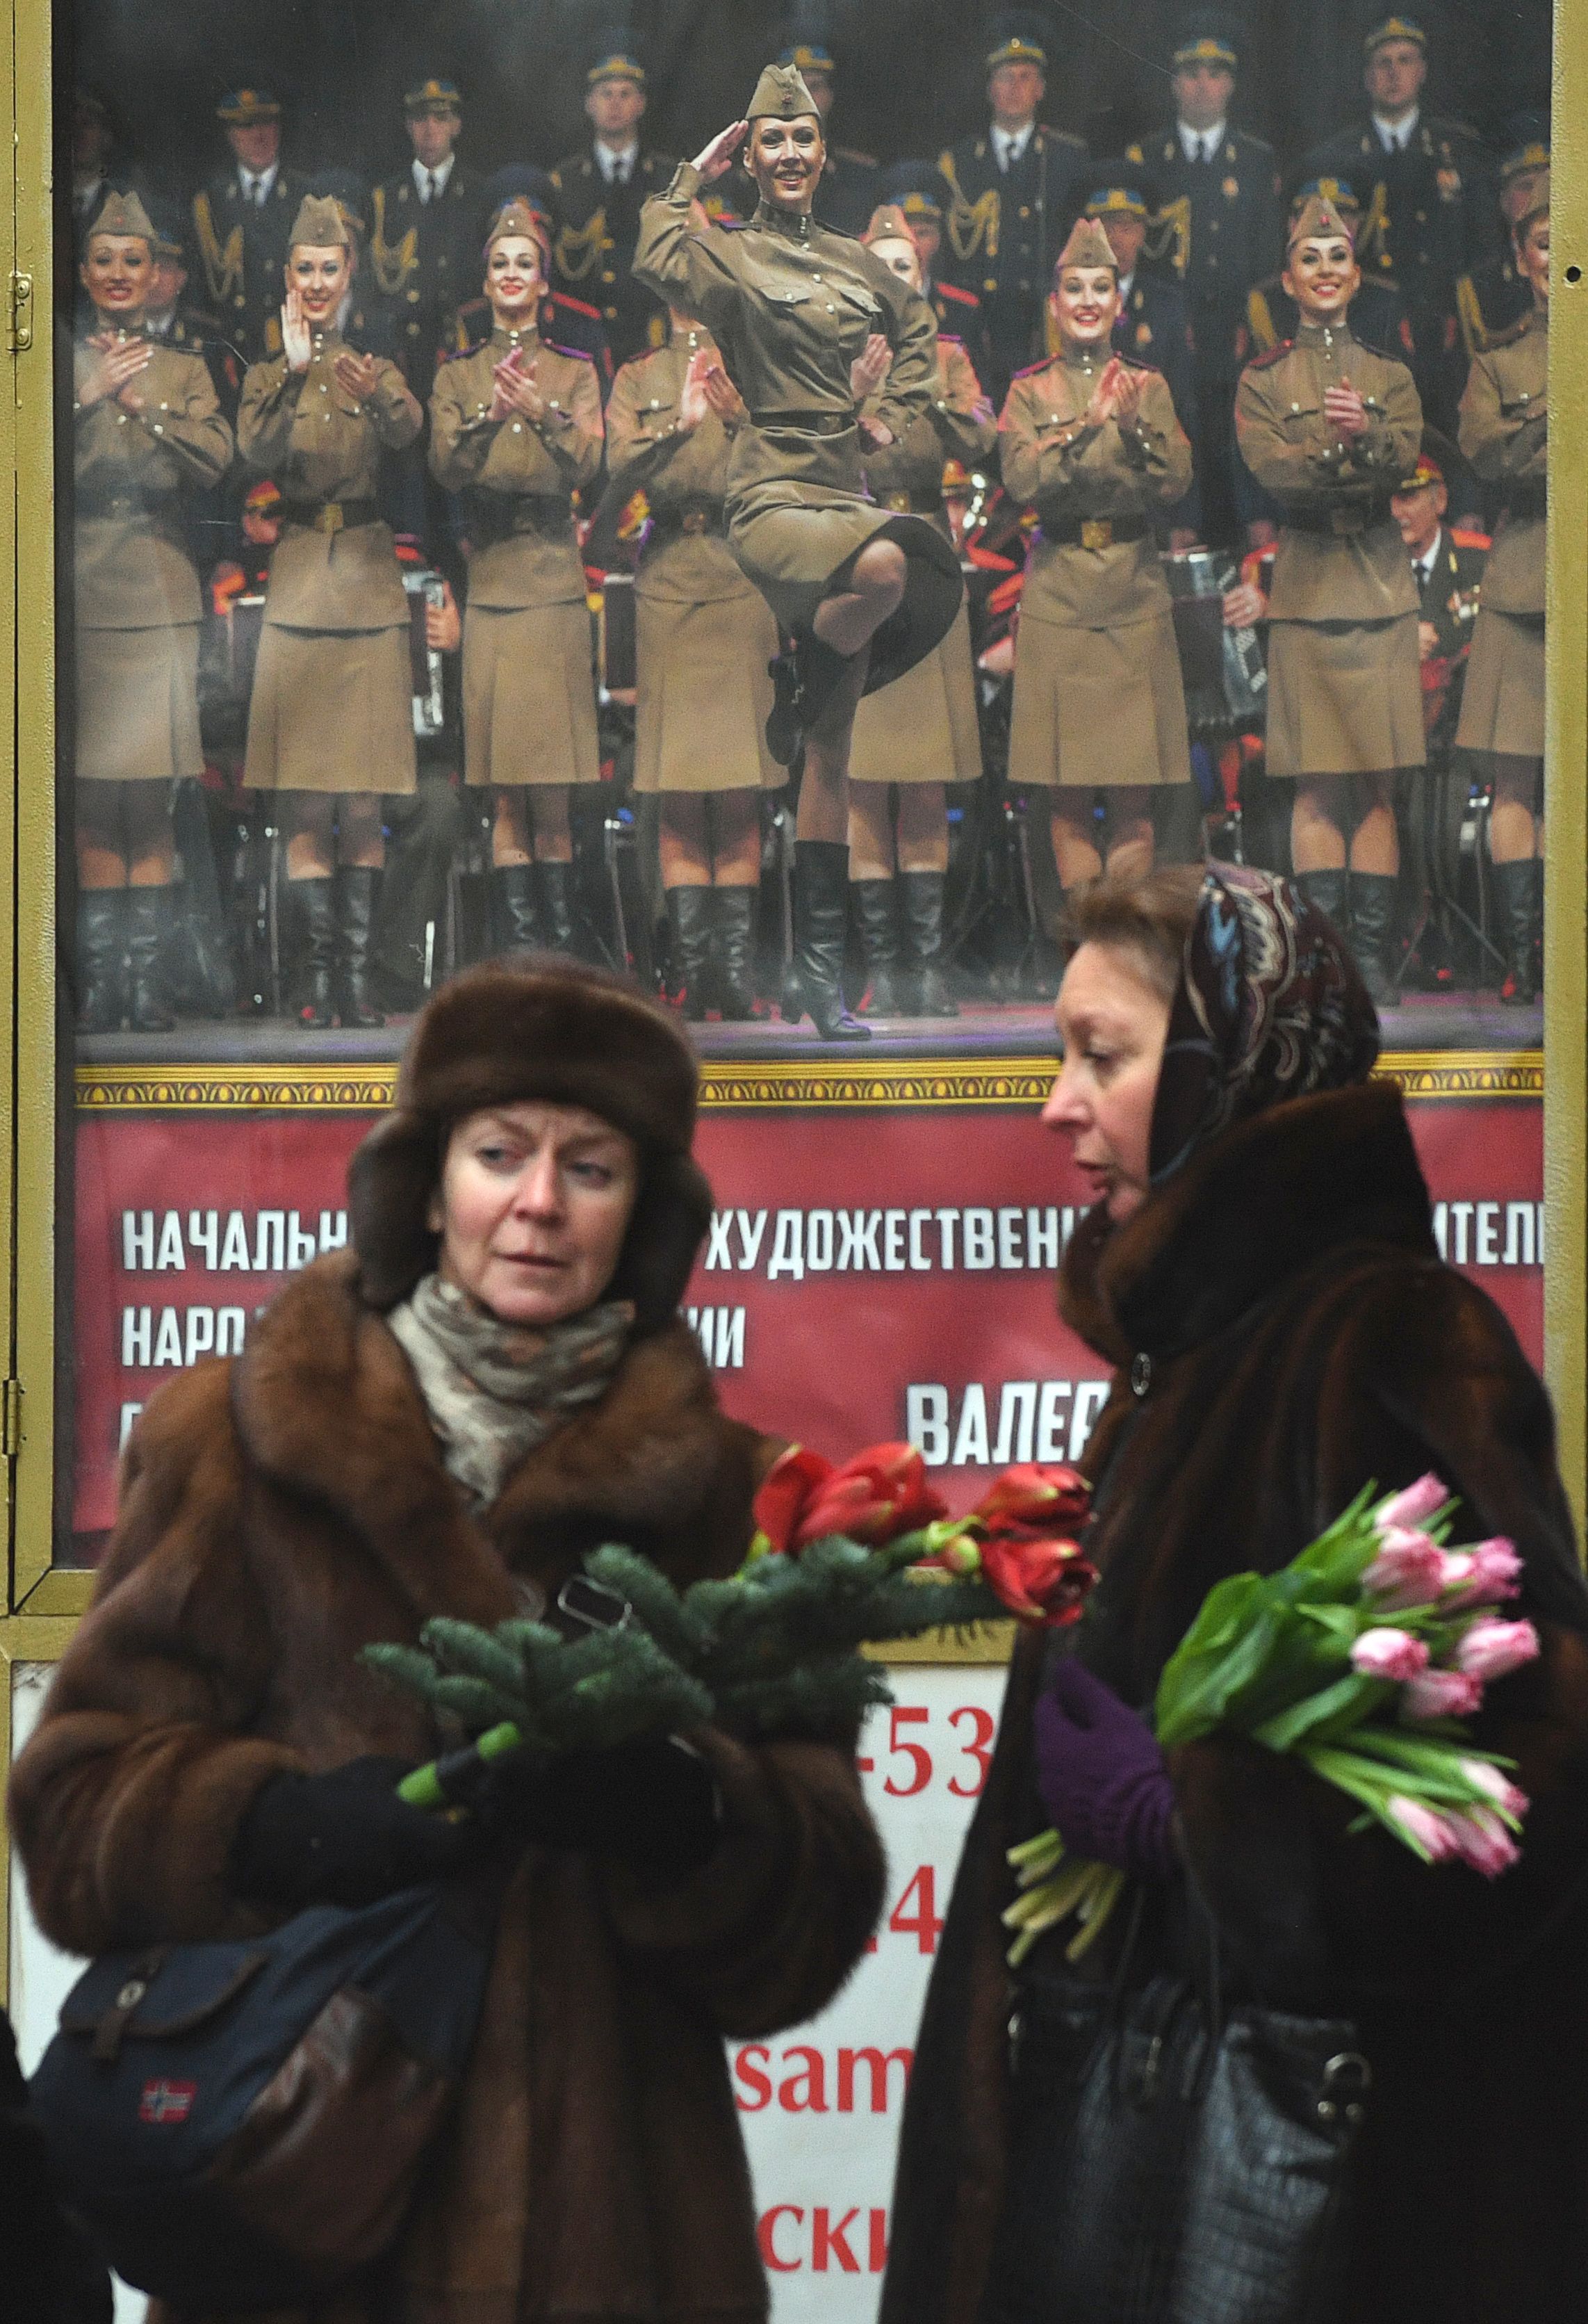 روسيات يضعن الزهور على باب مبنى مسرح الفرقة الموسيقية التابعة للجيش الروسى فى موسكو